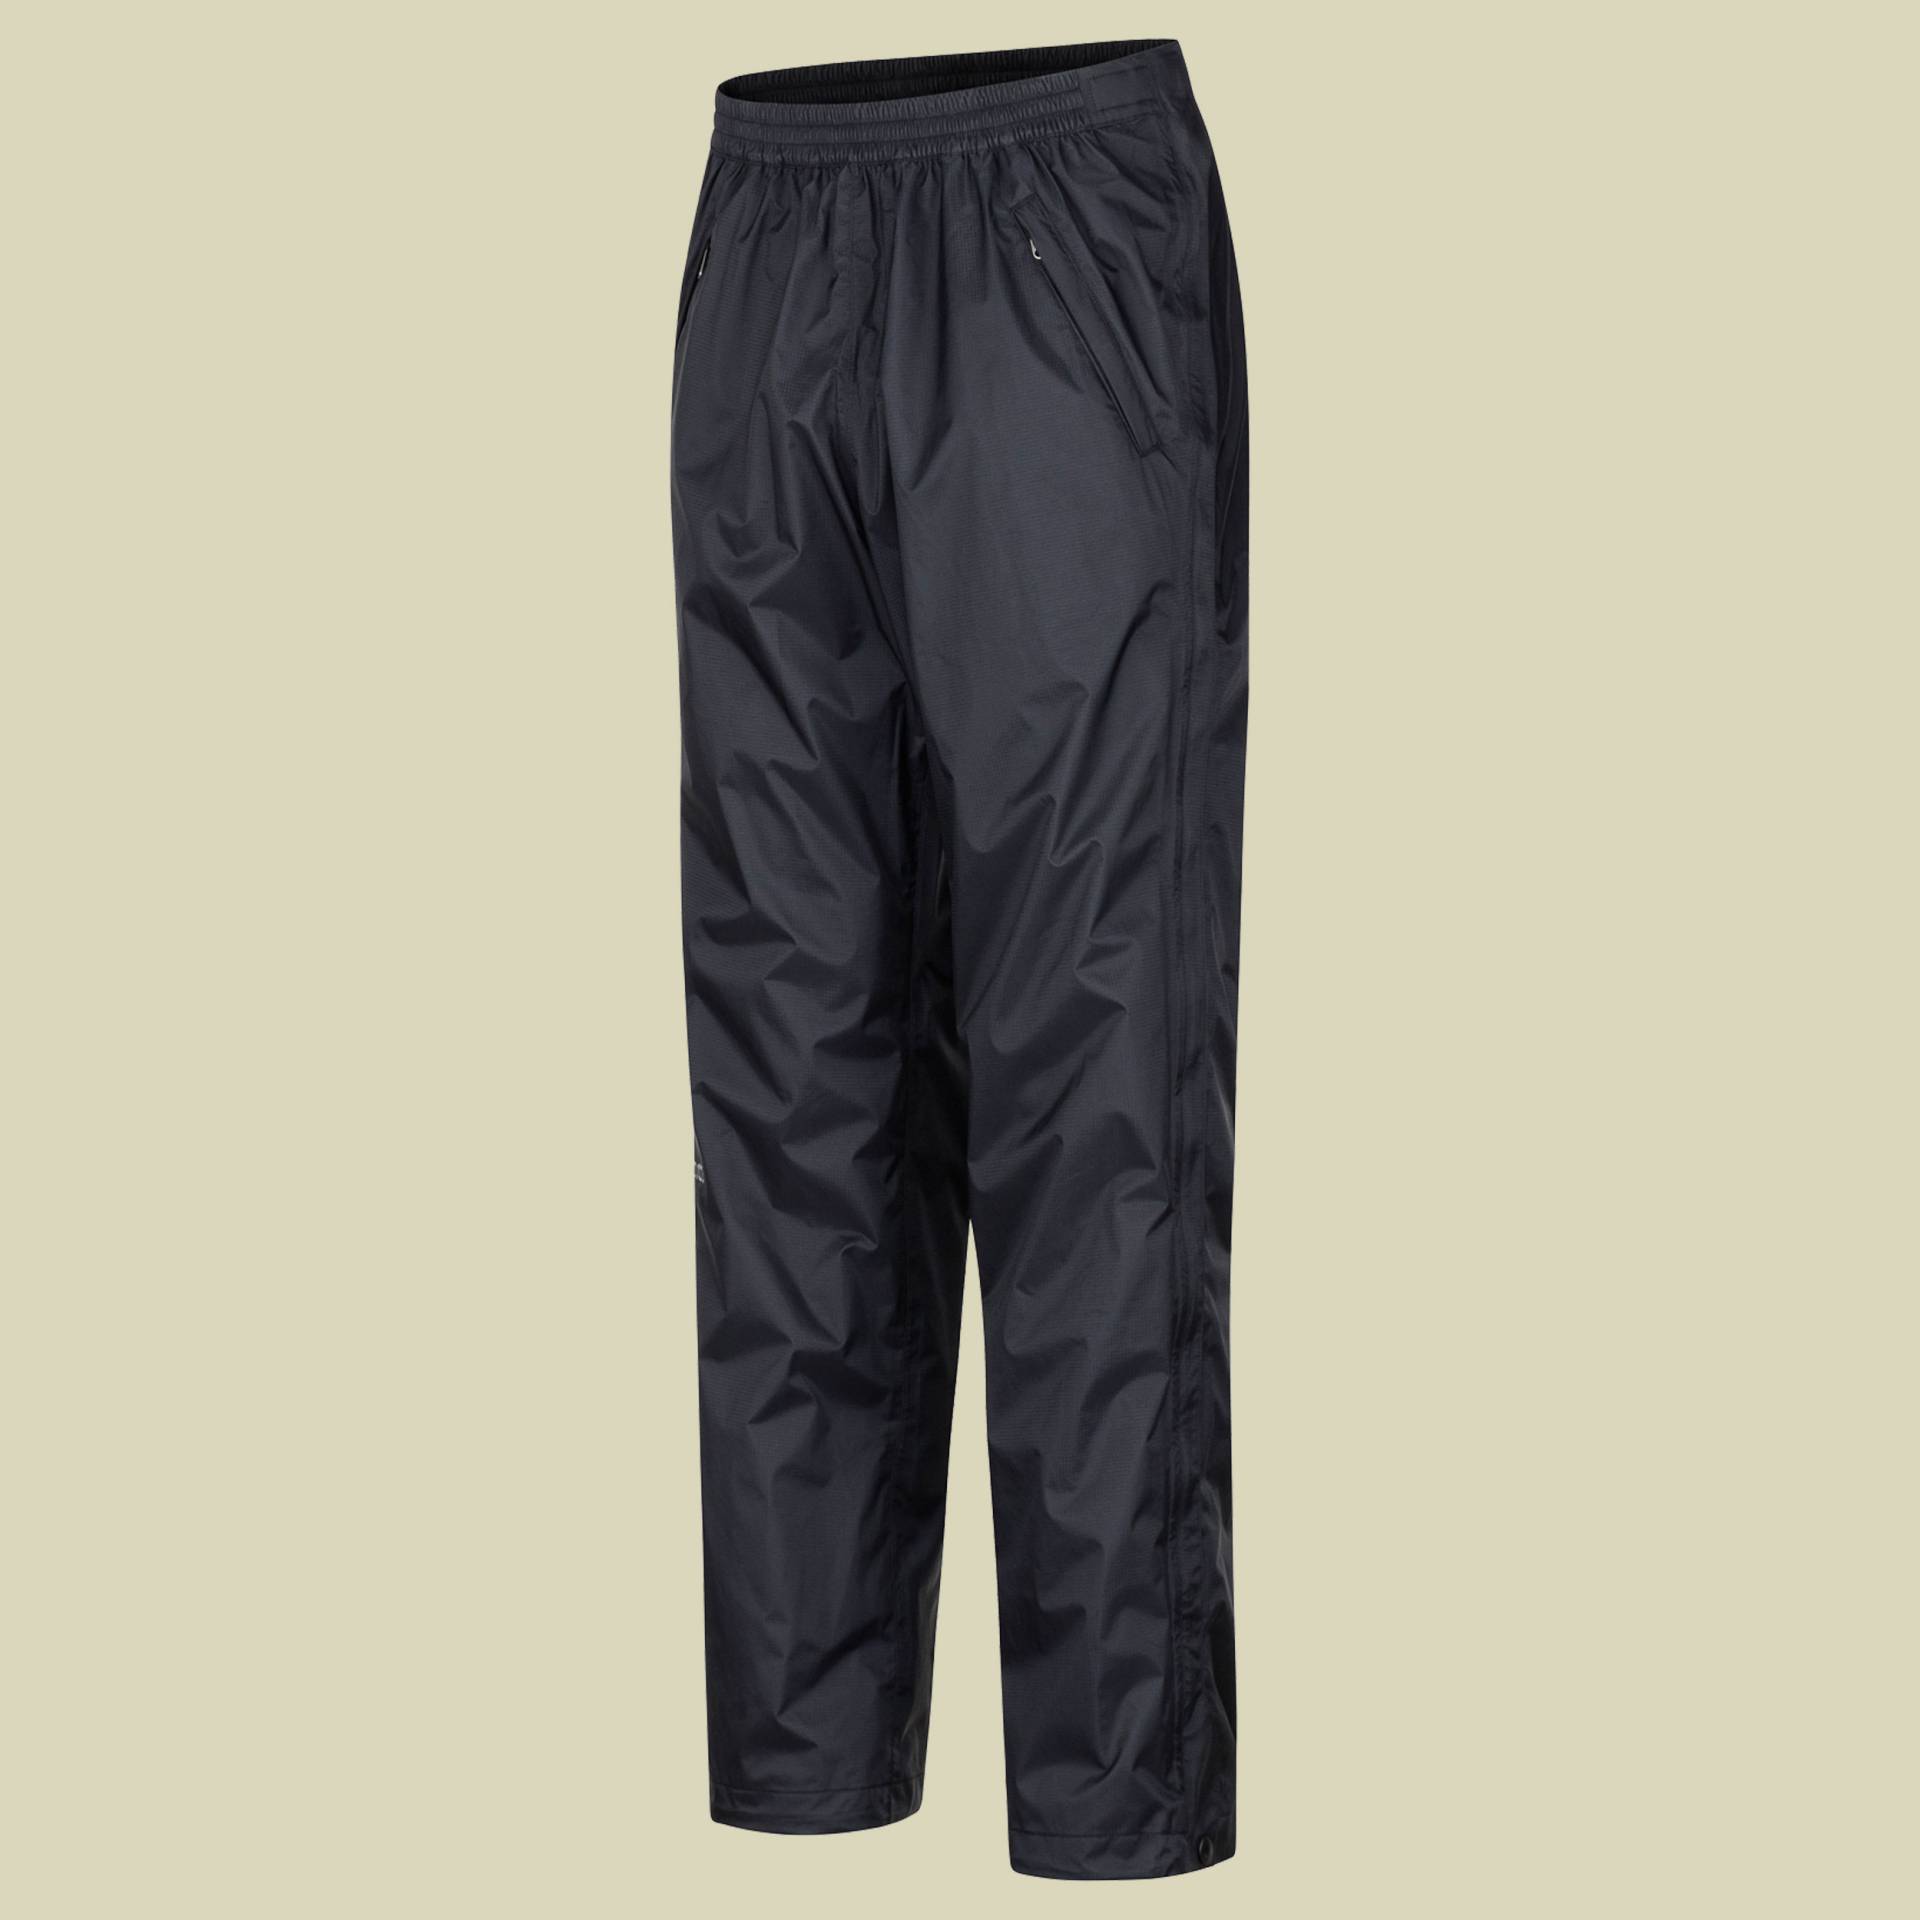 PreCip Eco Full Zip Pant short Men Größe XL (short) Farbe black von Marmot